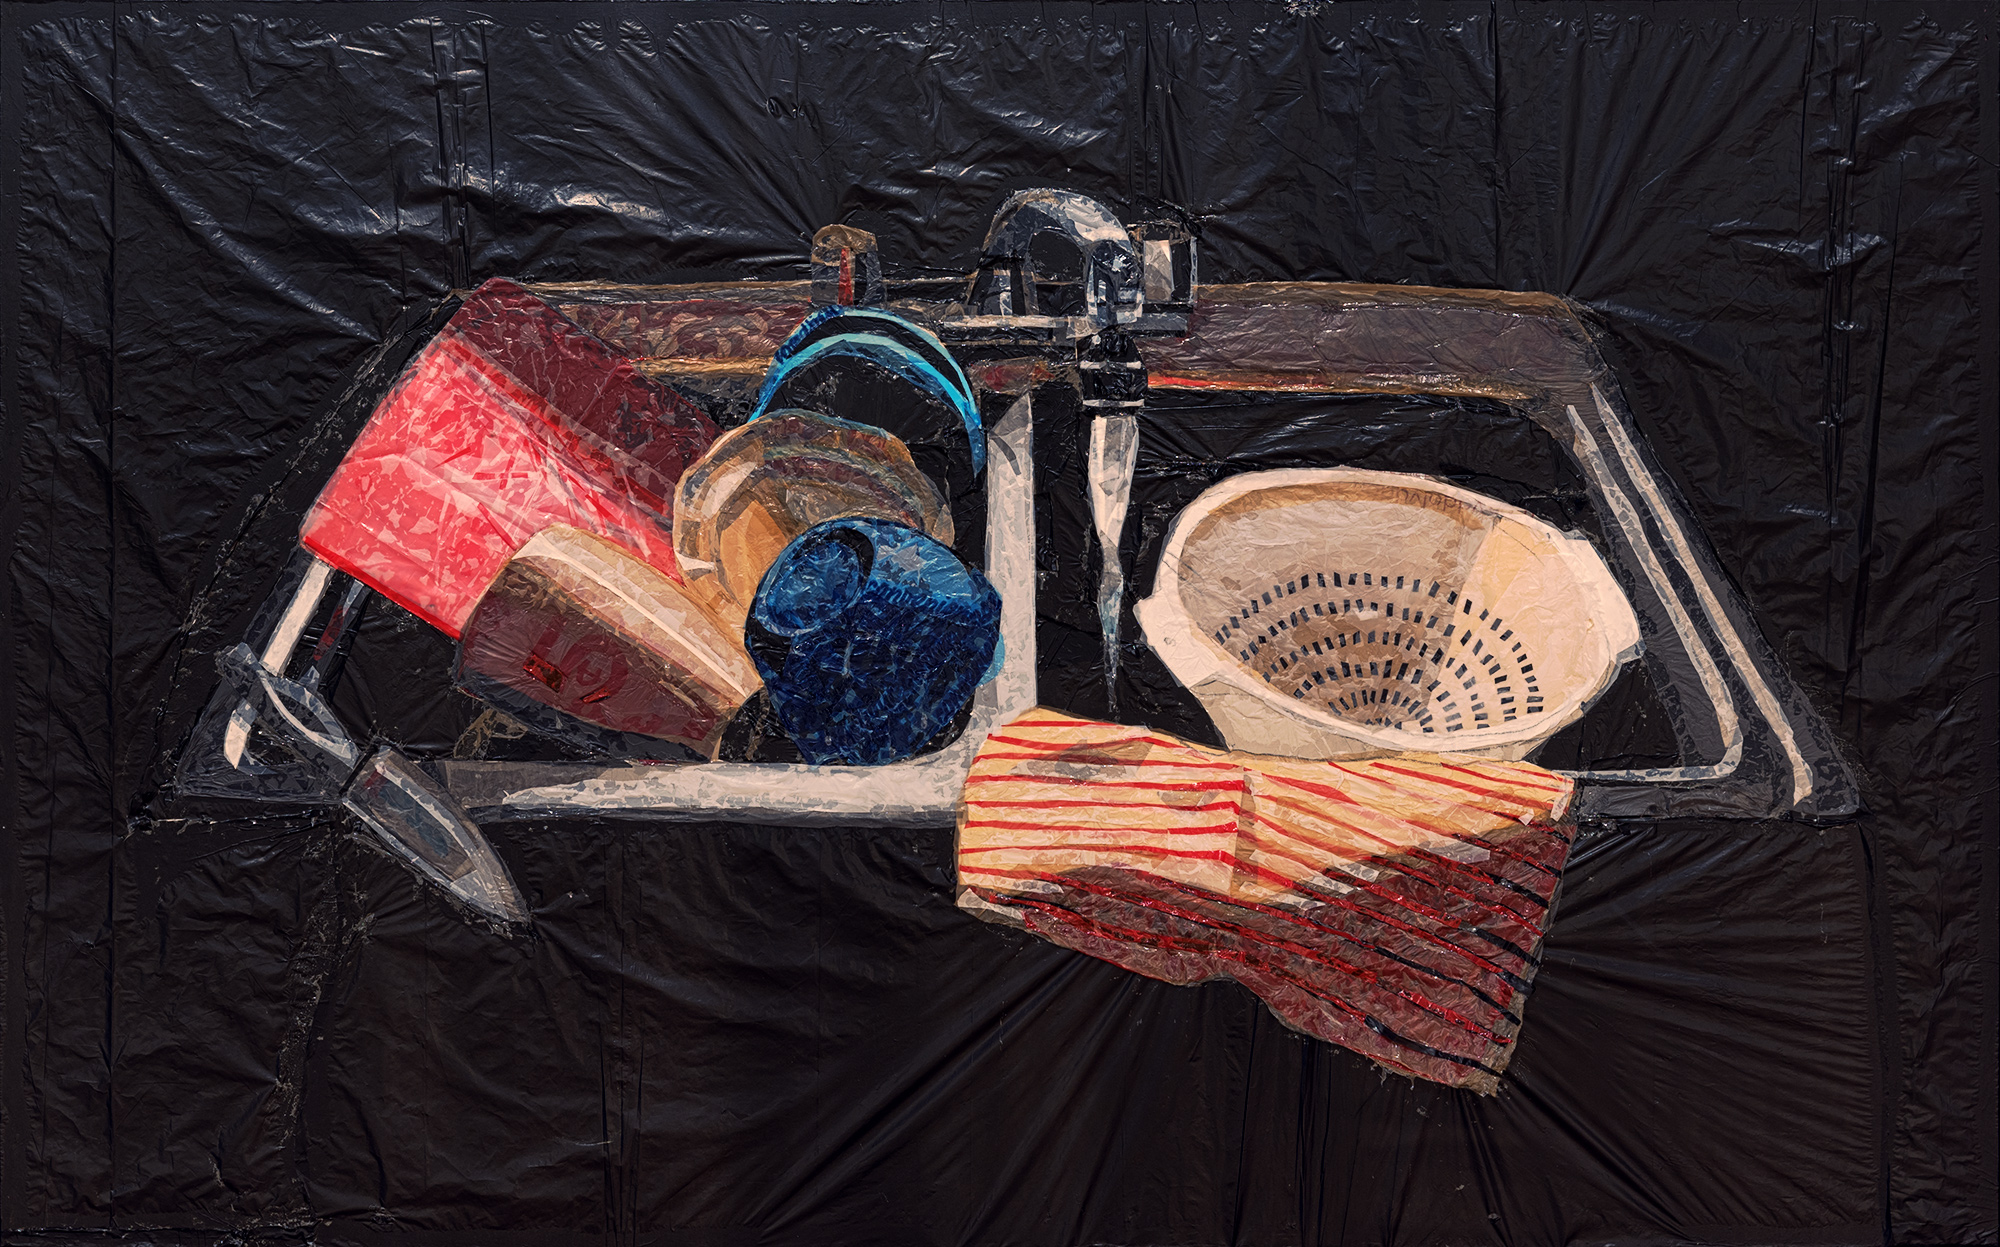 The Kitchen Sink by Haley Ard